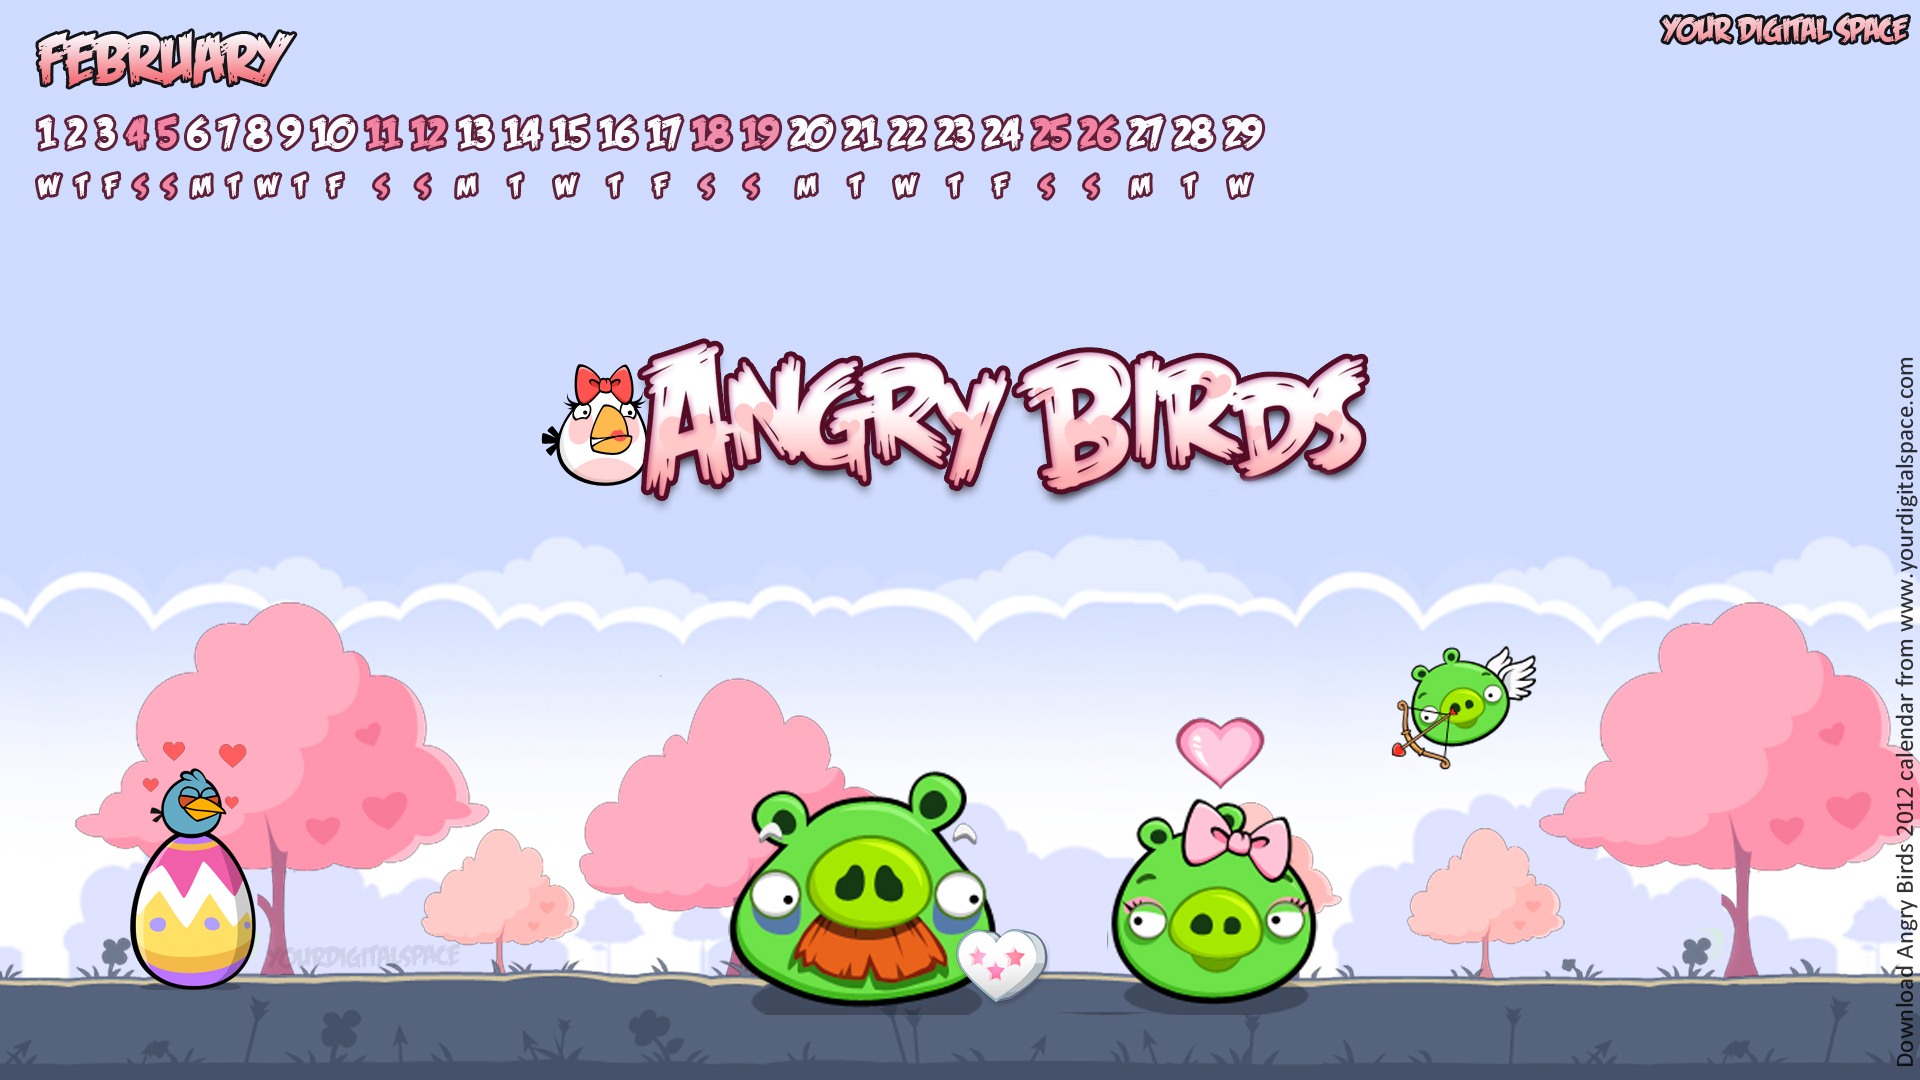 Angry Birds 2012 calendario fondos de escritorio #4 - 1920x1080